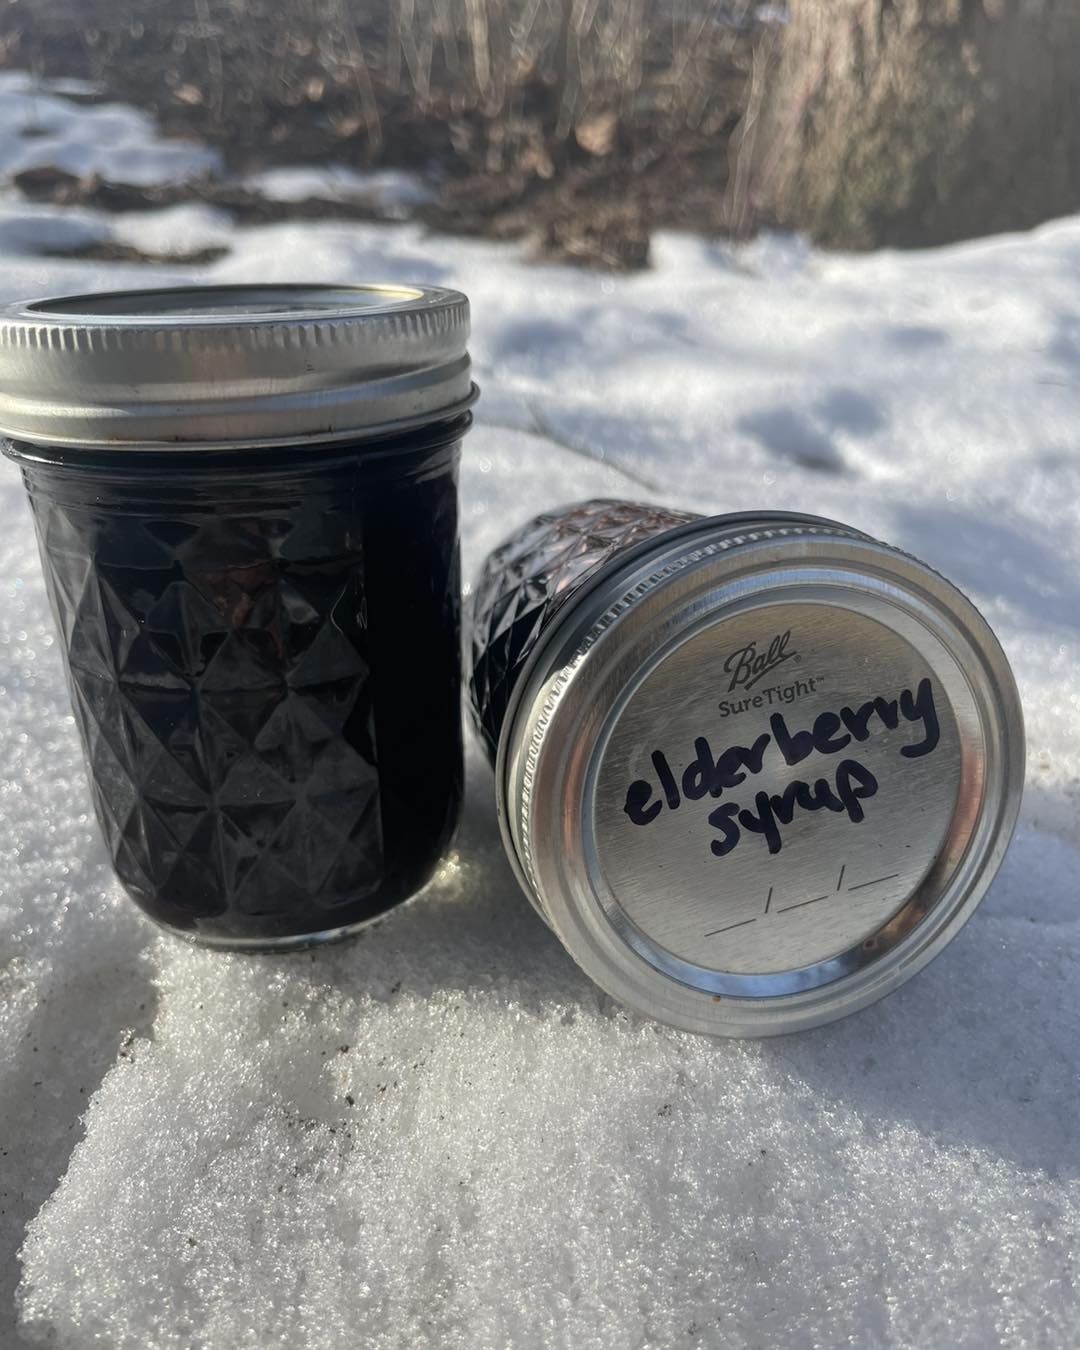 elderberry syrup in snow.jpg